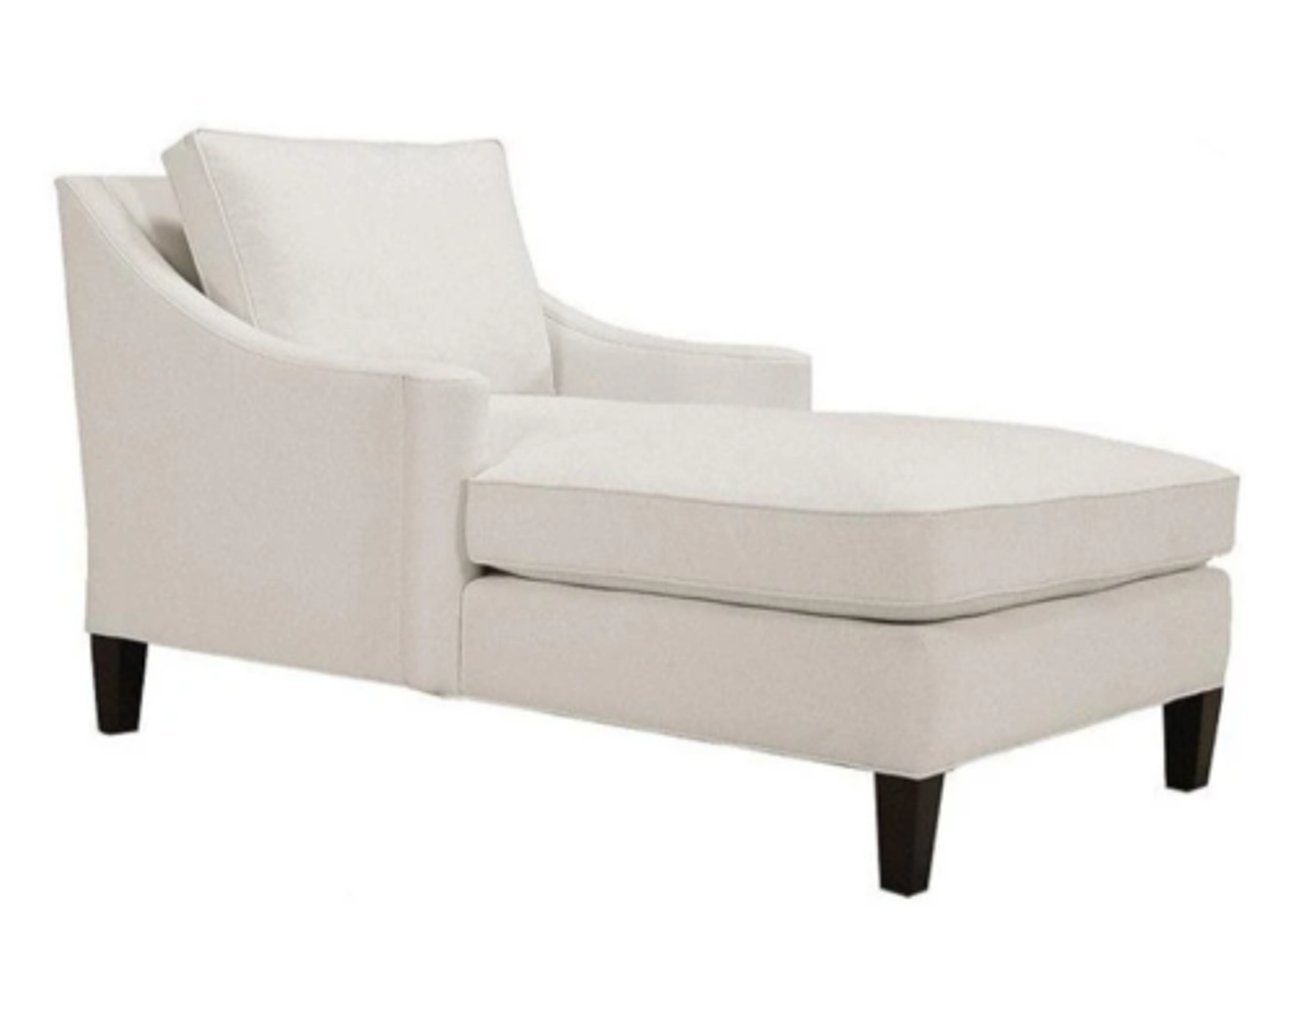 Wohnzimmer Luxus Chaiselongue JVmoebel Modern Made Möbel Chaiselongue in Design, Weiß Neu Europe